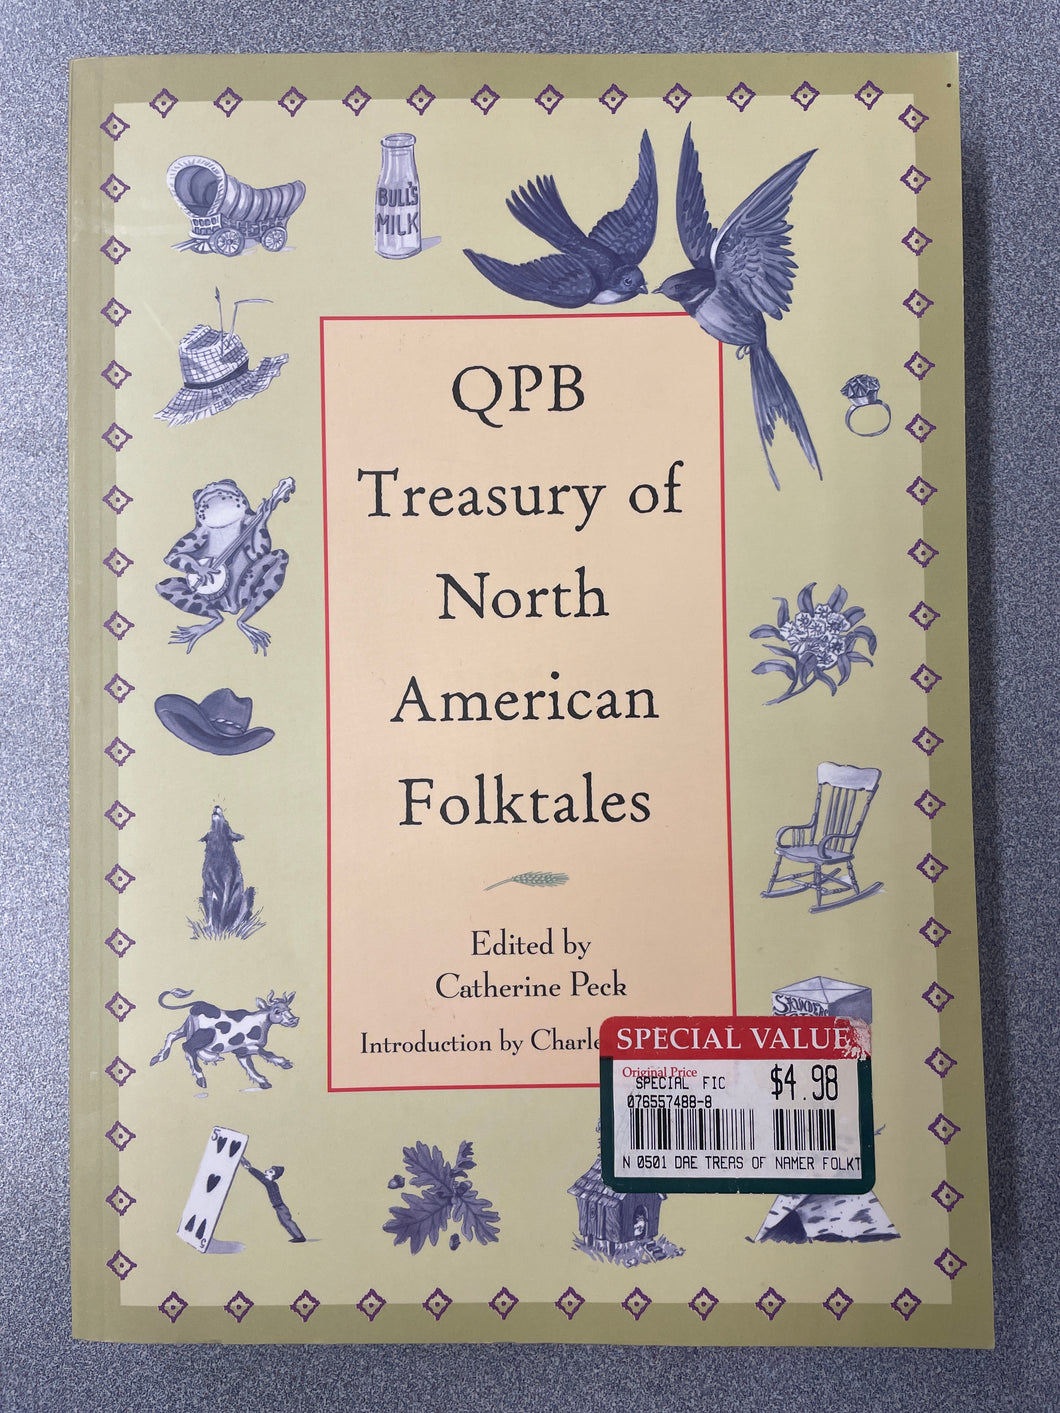 YF  QPB Treasury of North American Folktales, Peck, Catherine, ed. [1998] N 3/24